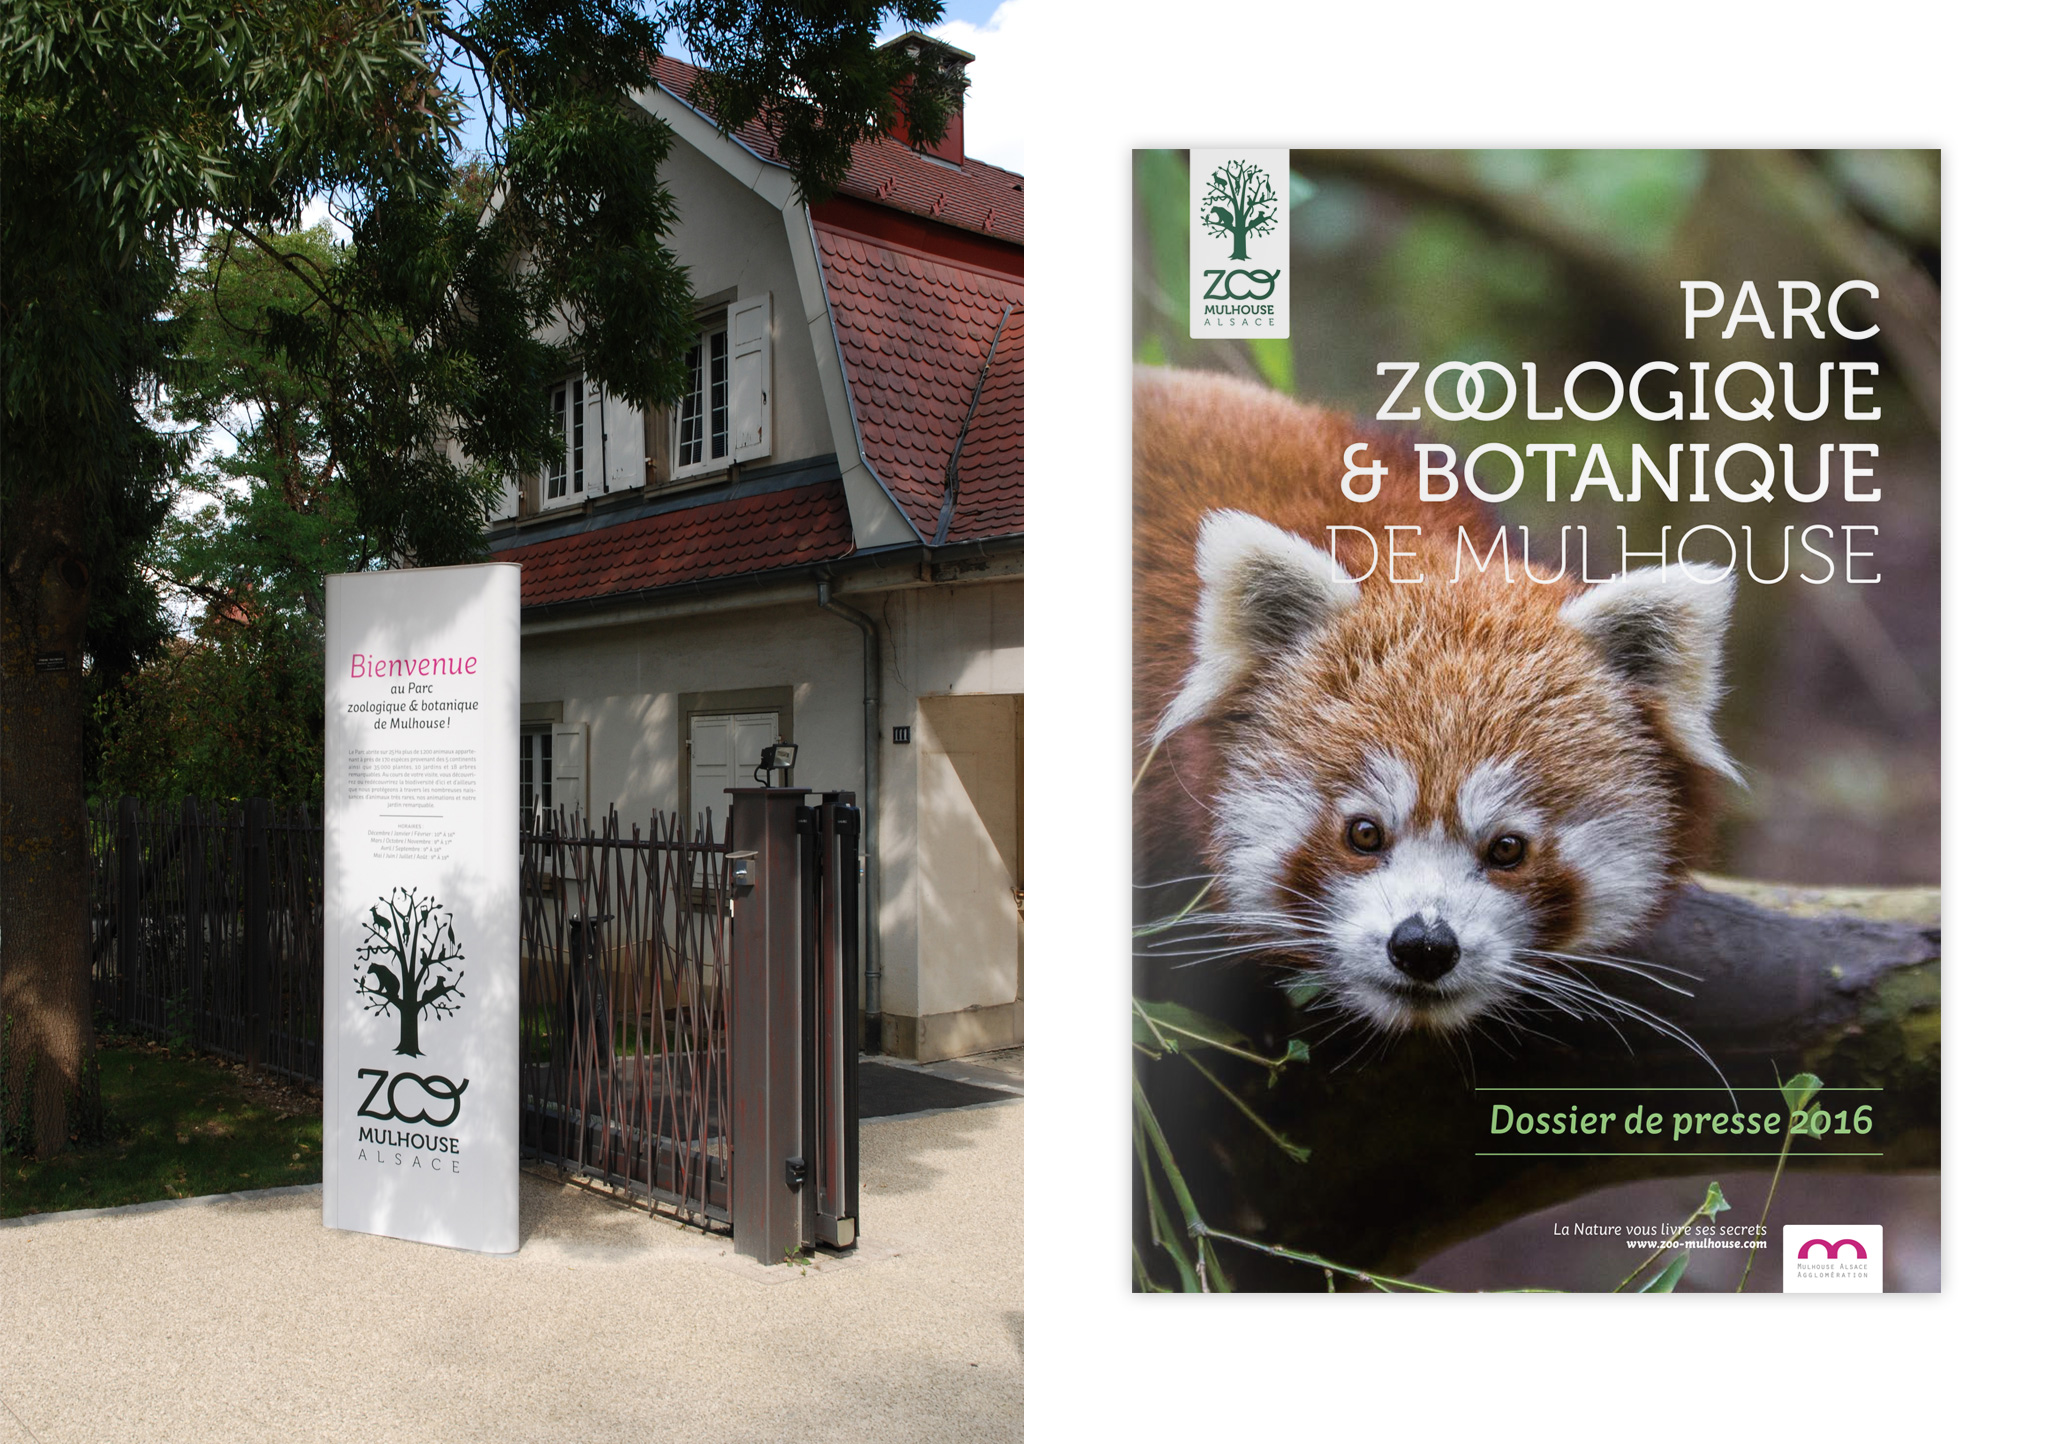 Parc zoologique & botanique de Mulhouse